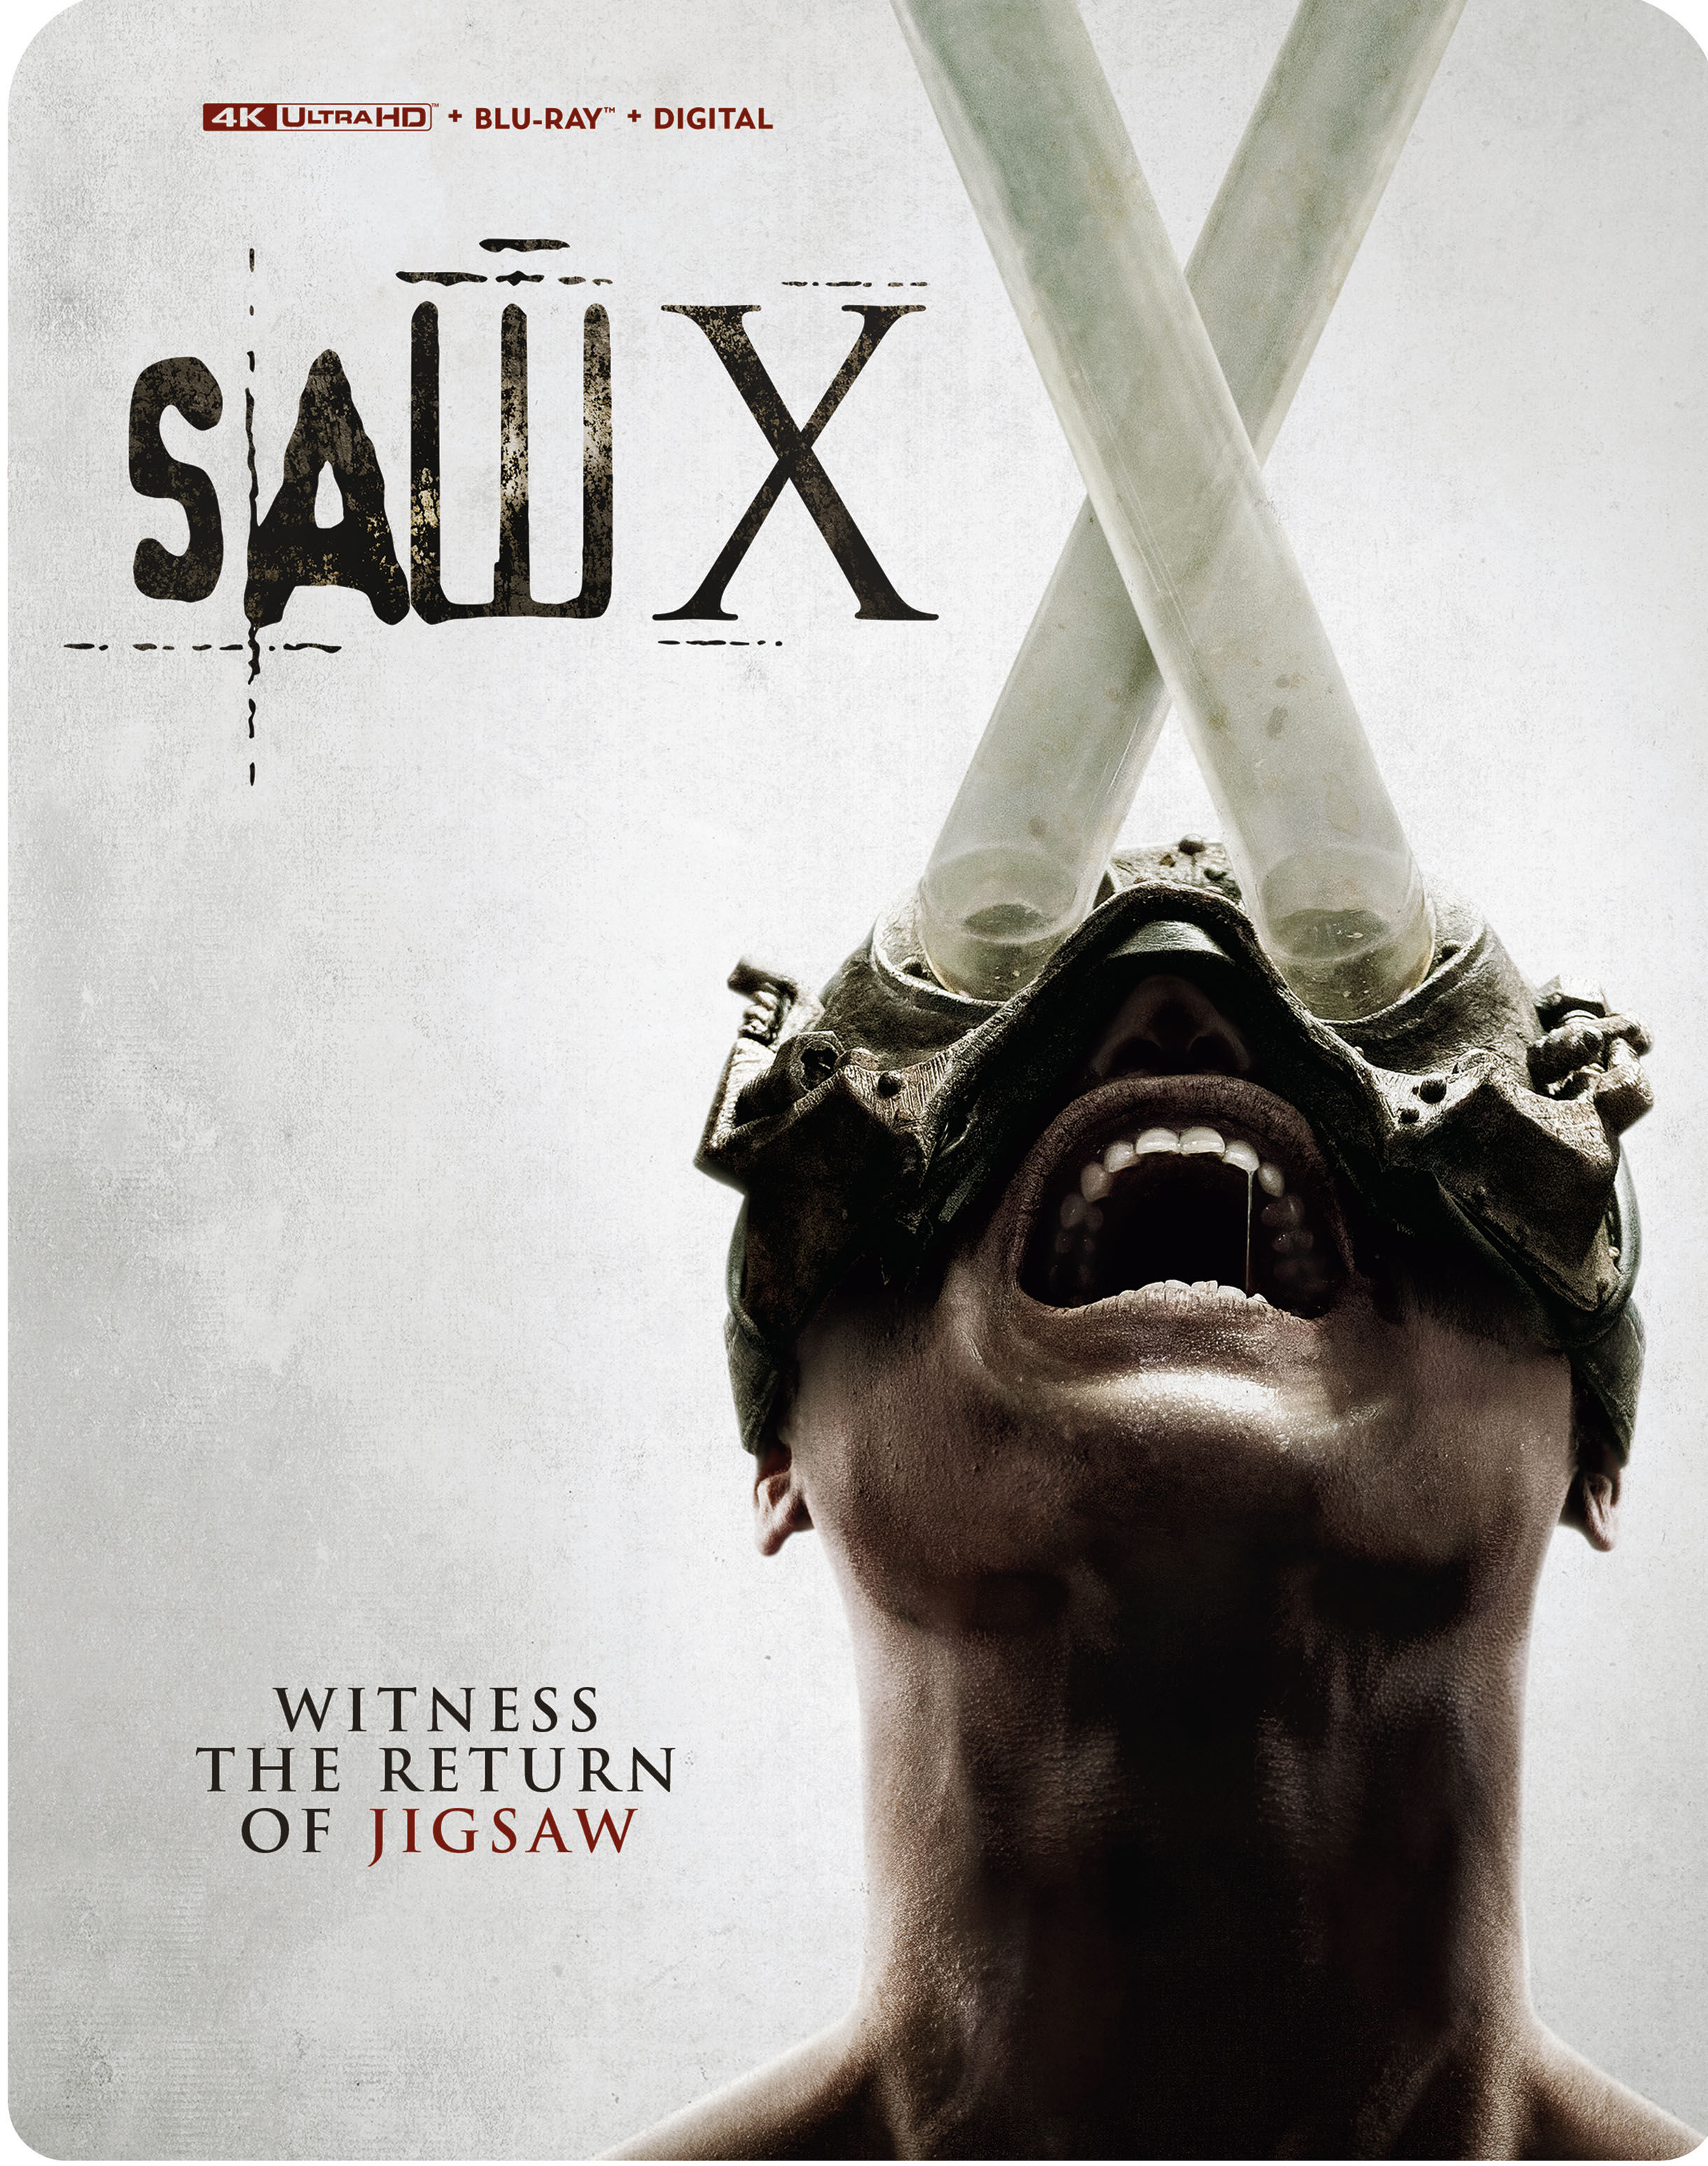 Ultra HD Blu-ray 💿 on X: 'Saw X' 4K Ultra HD Blu-ray, German 🇩🇪  release:  #SawX  / X